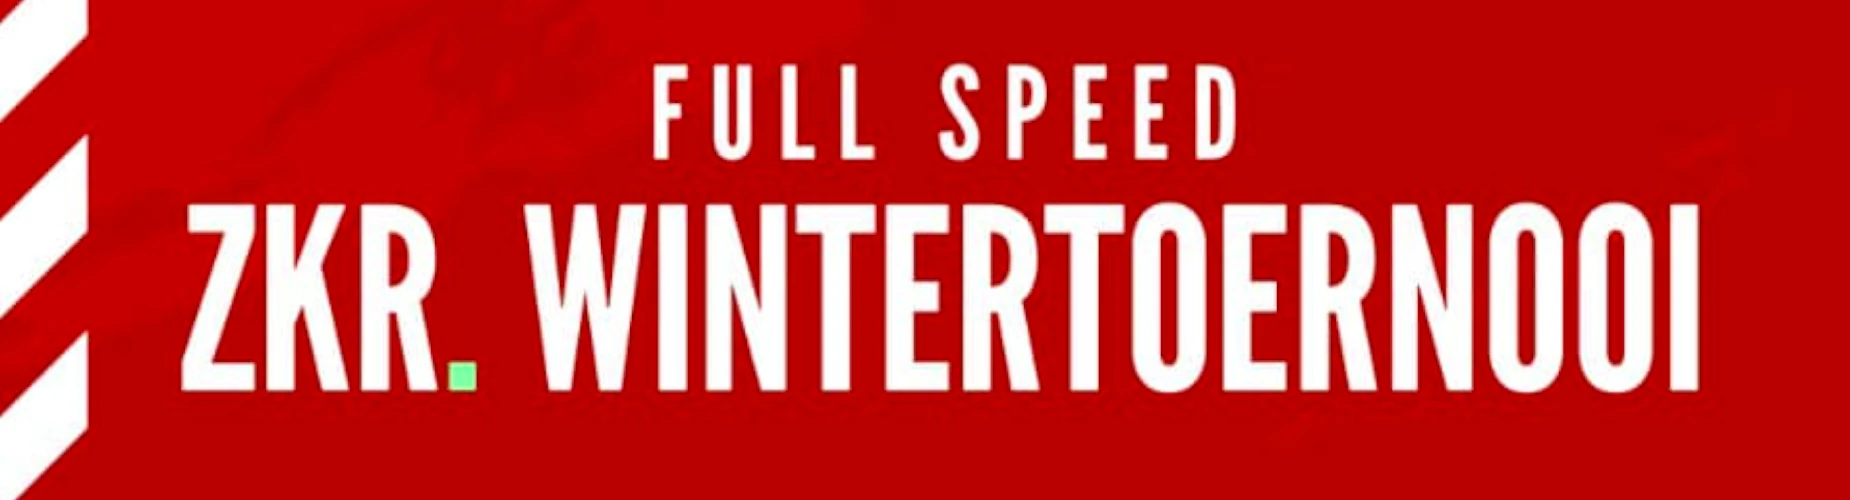 Banner - Full Speed ZKR. Wintertoernooi - Full Speed - Delft